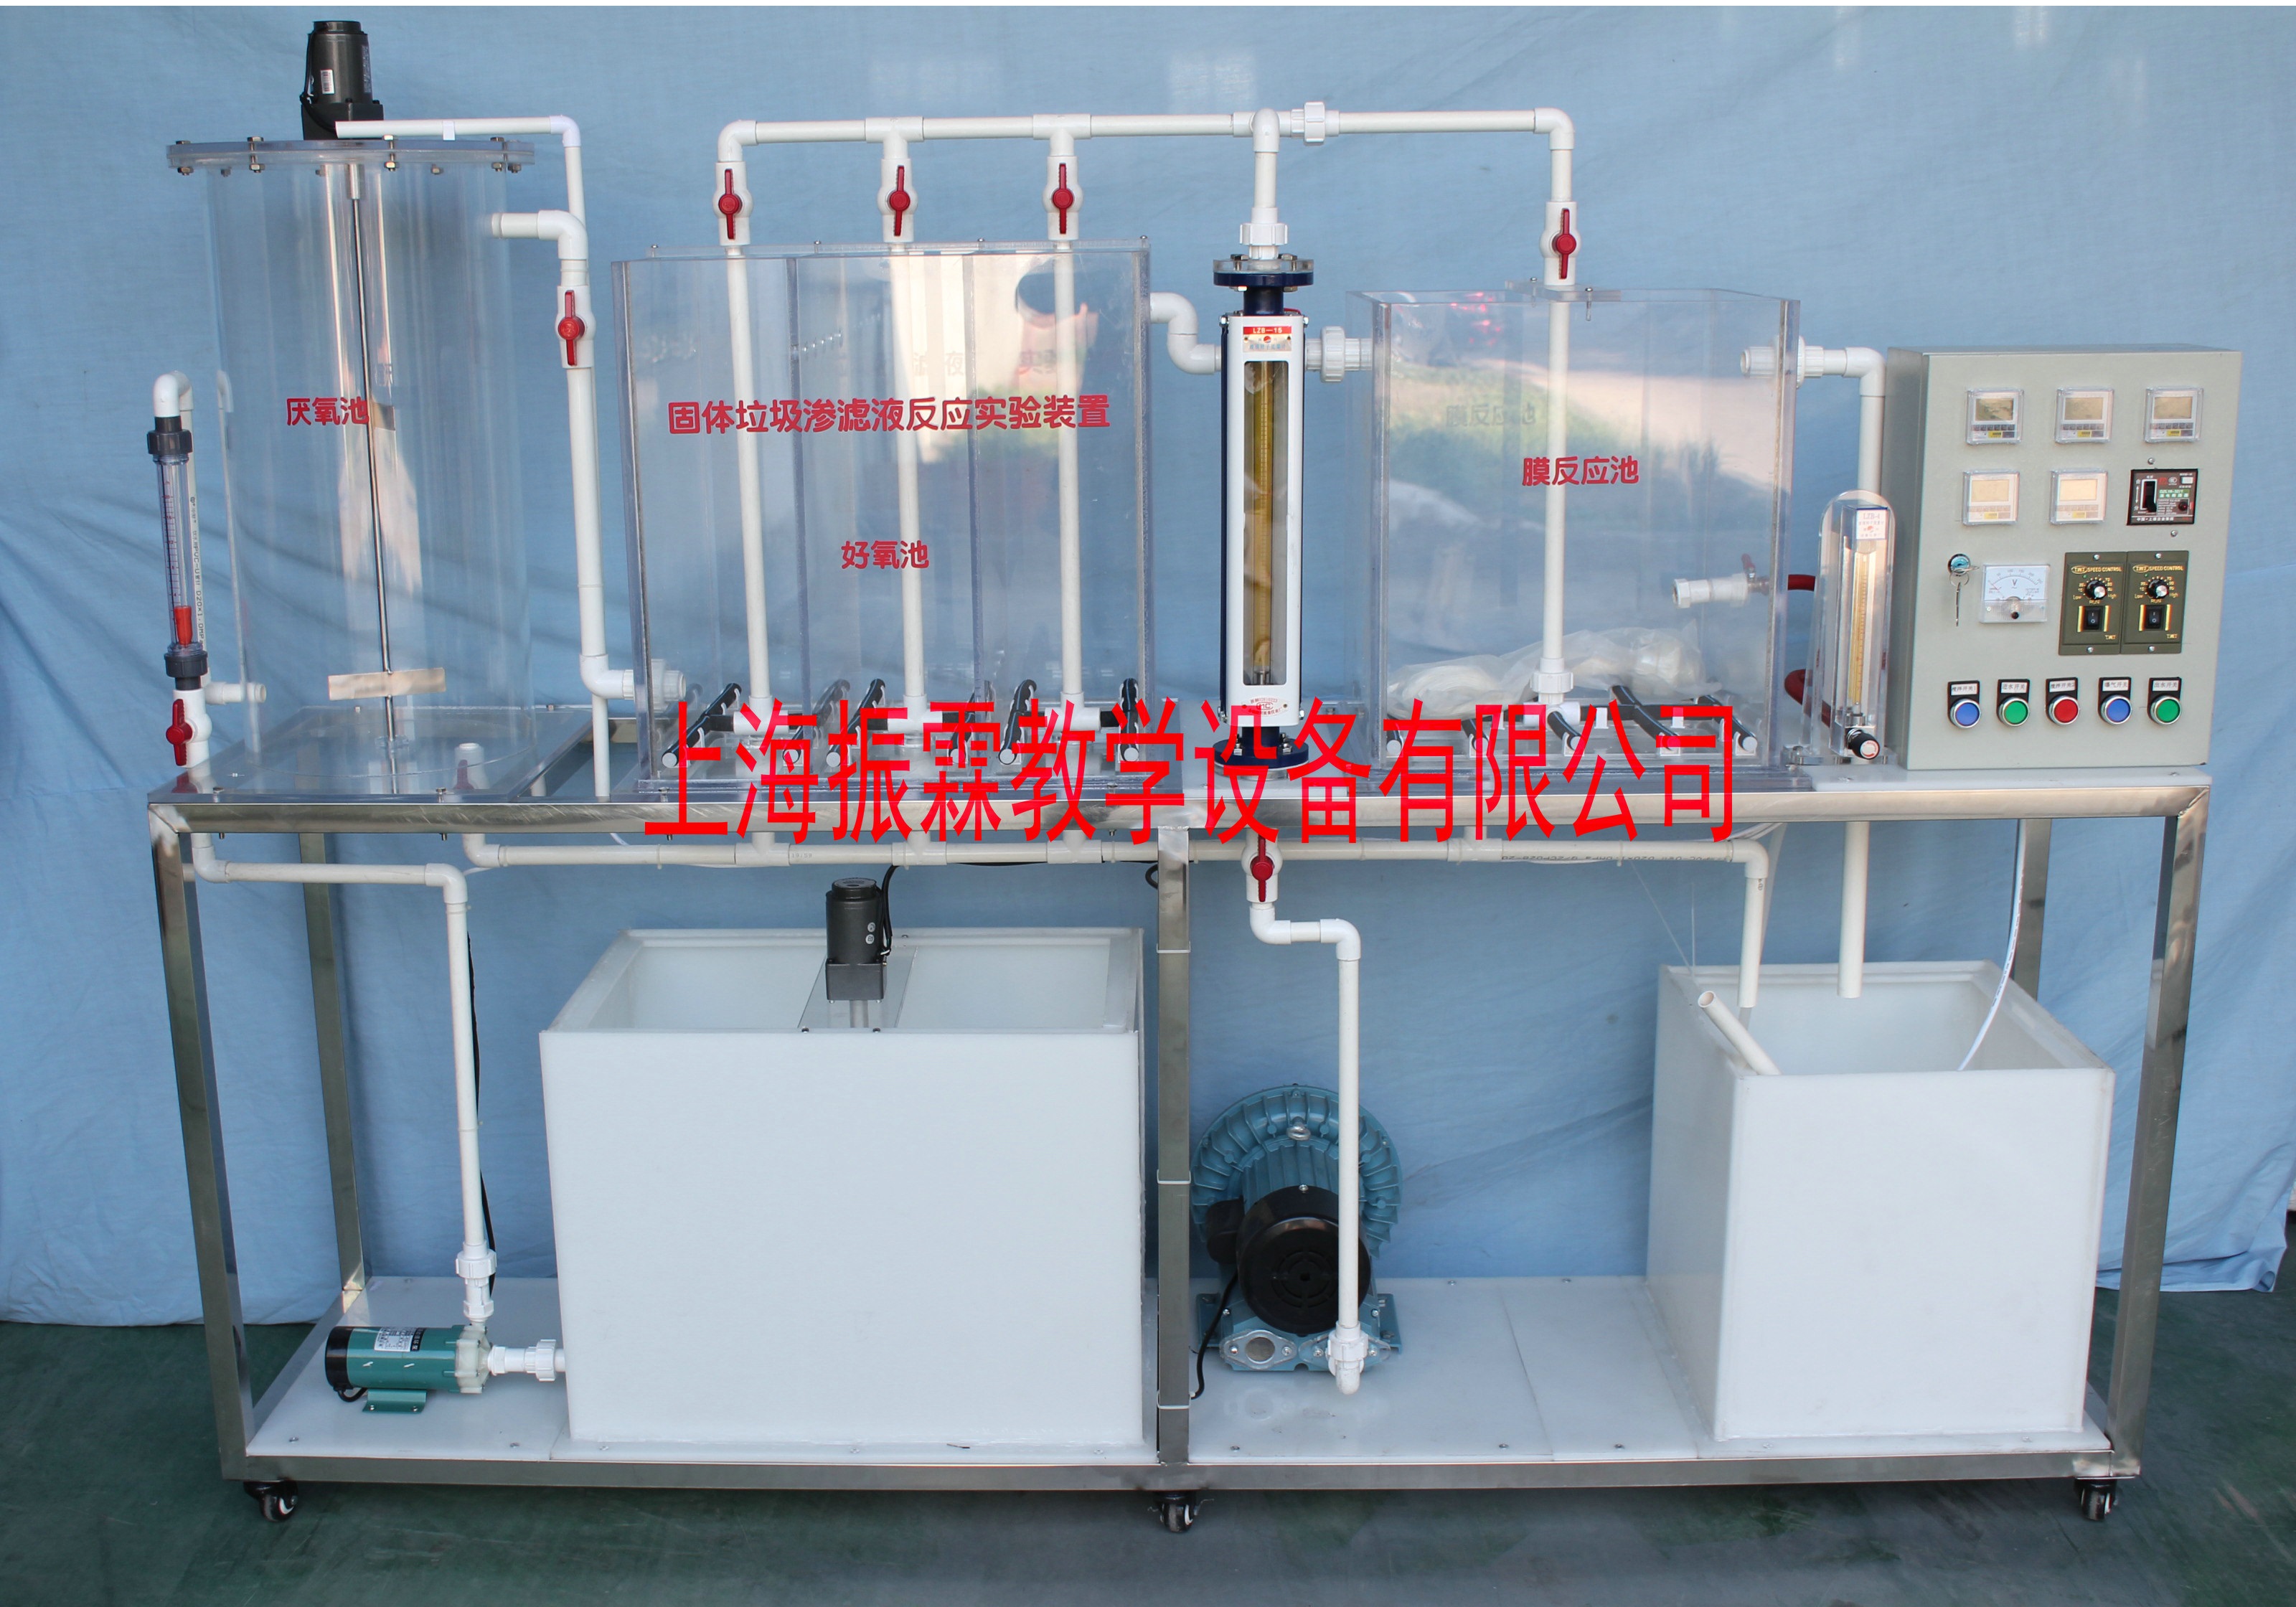 环境工程实验设备,固体垃圾渗漏液反应实验,污水处理实验装置--上海振霖教学设备有限公司